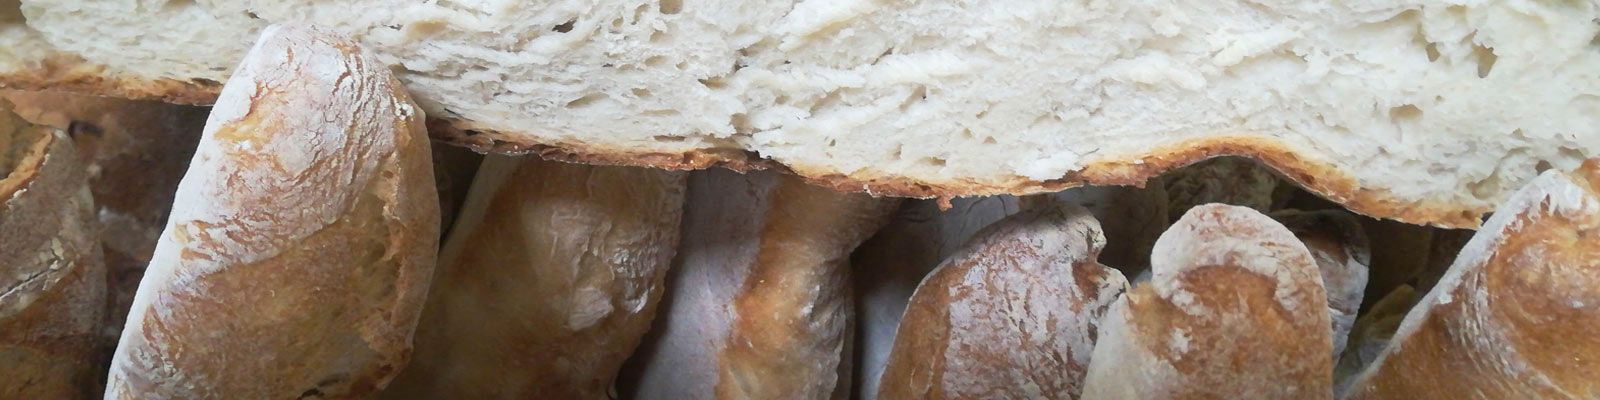 La Casa de las Empanadas barras pan